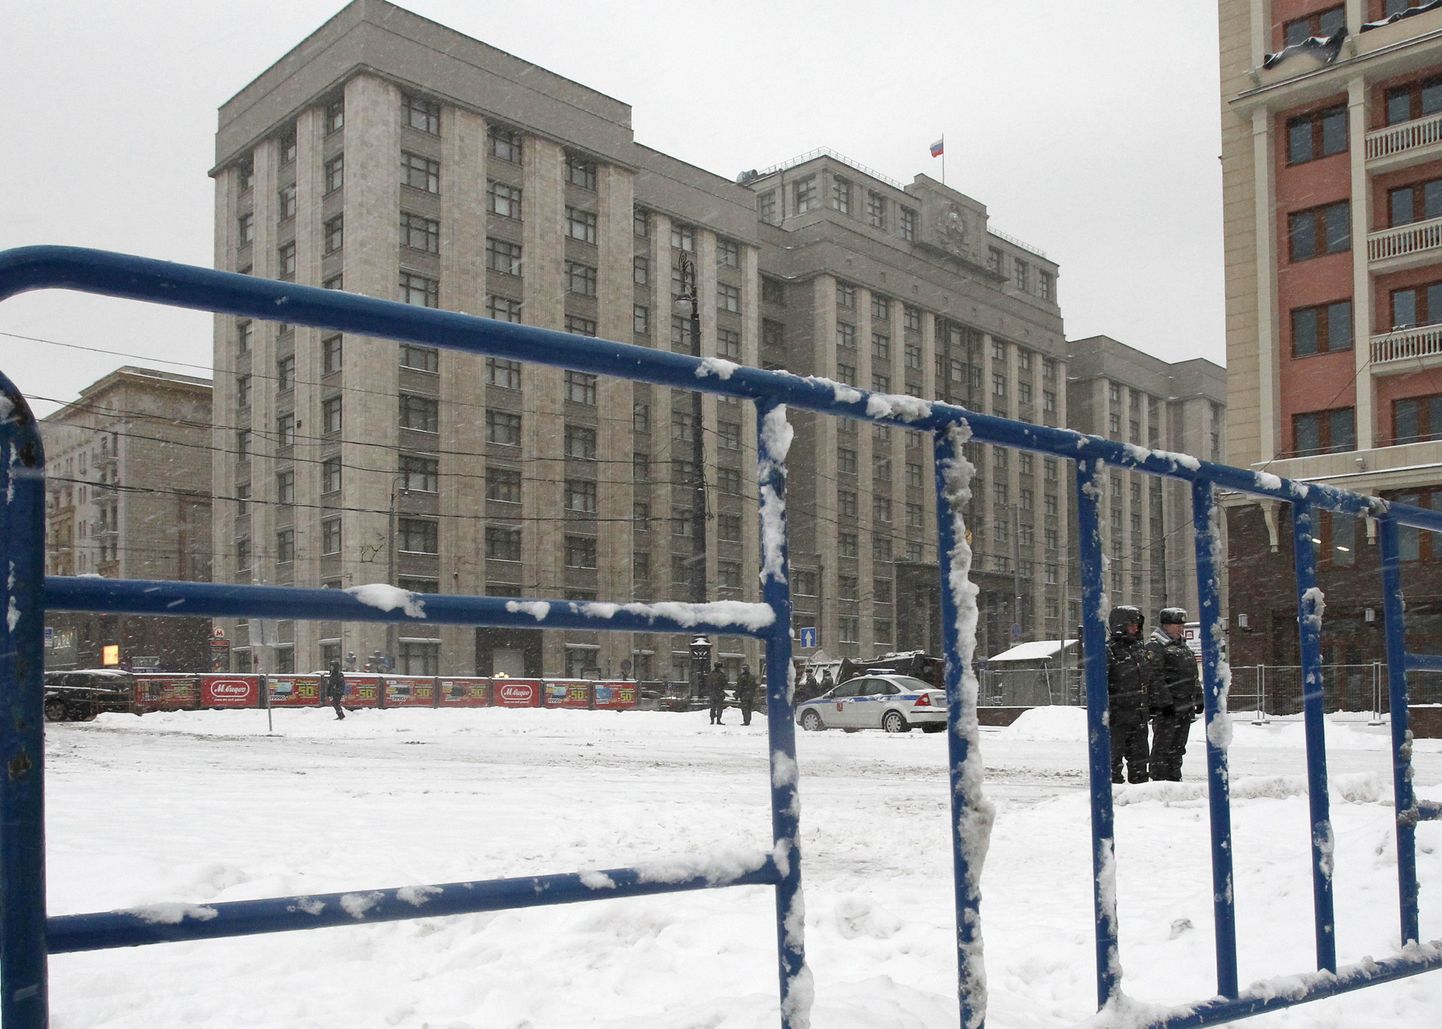 Moskvas asuv riigiduuma hoone, mida valvavad politseinikud.